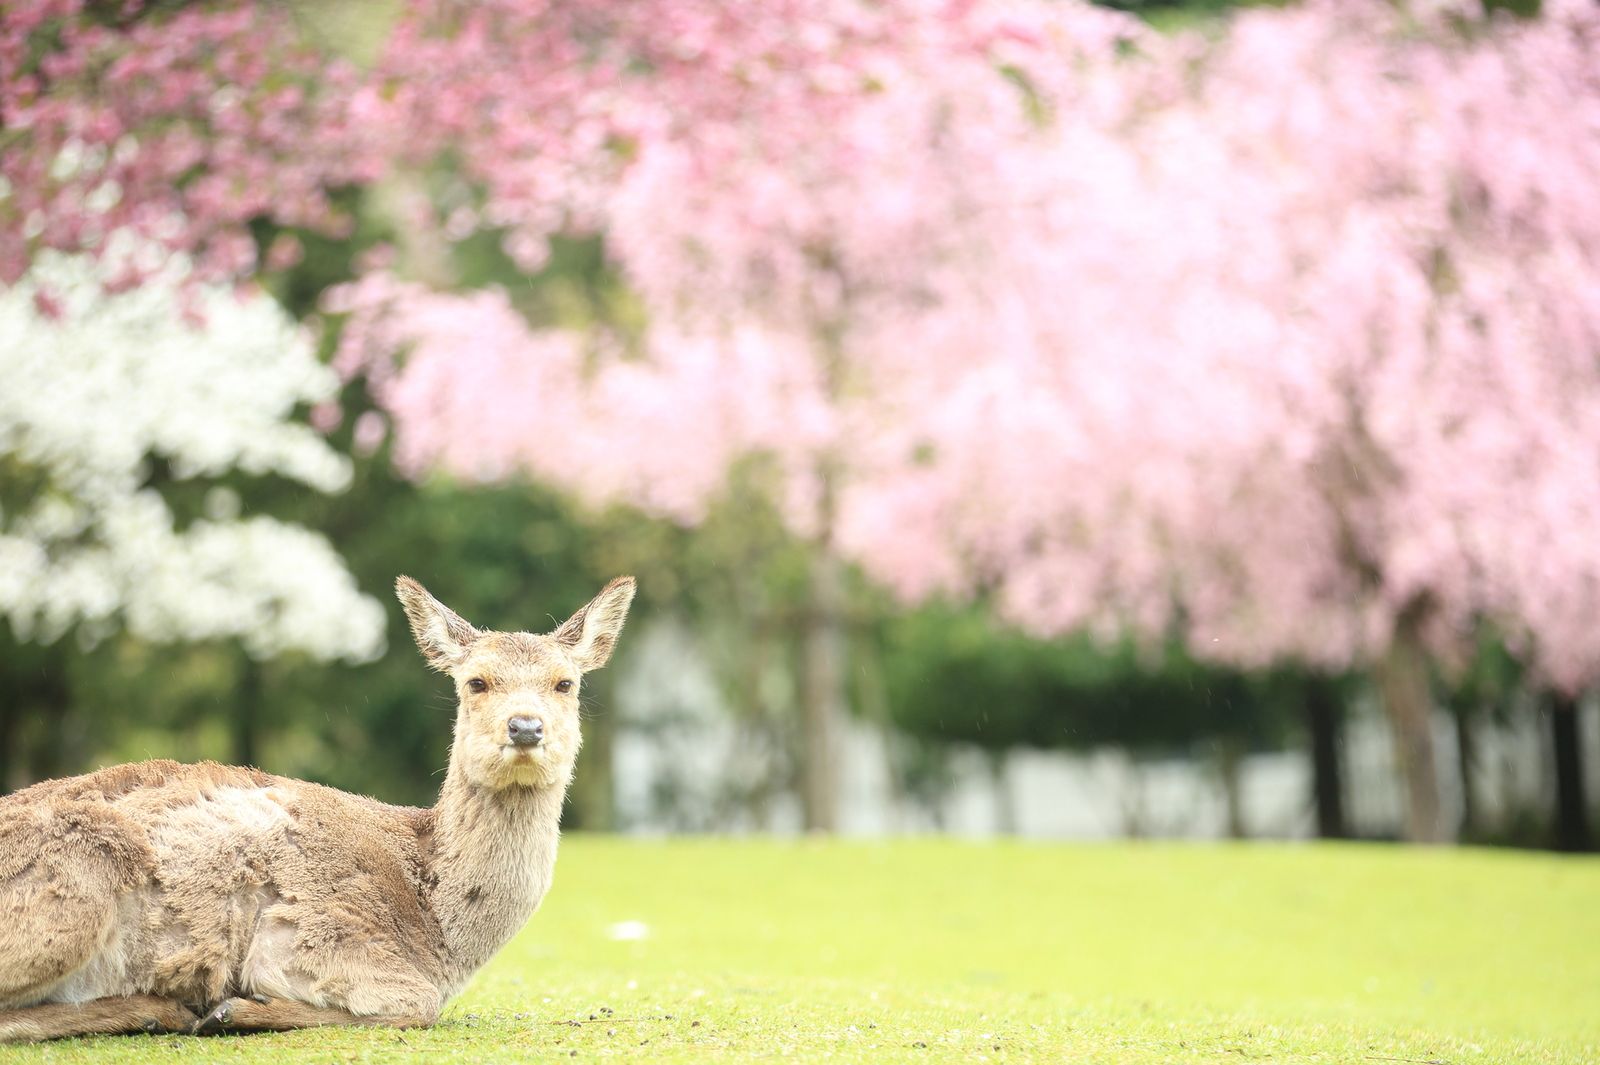 鹿だけじゃない 今年の春休みは絶好のお花見スポット 奈良公園 に行こう Retrip リトリップ